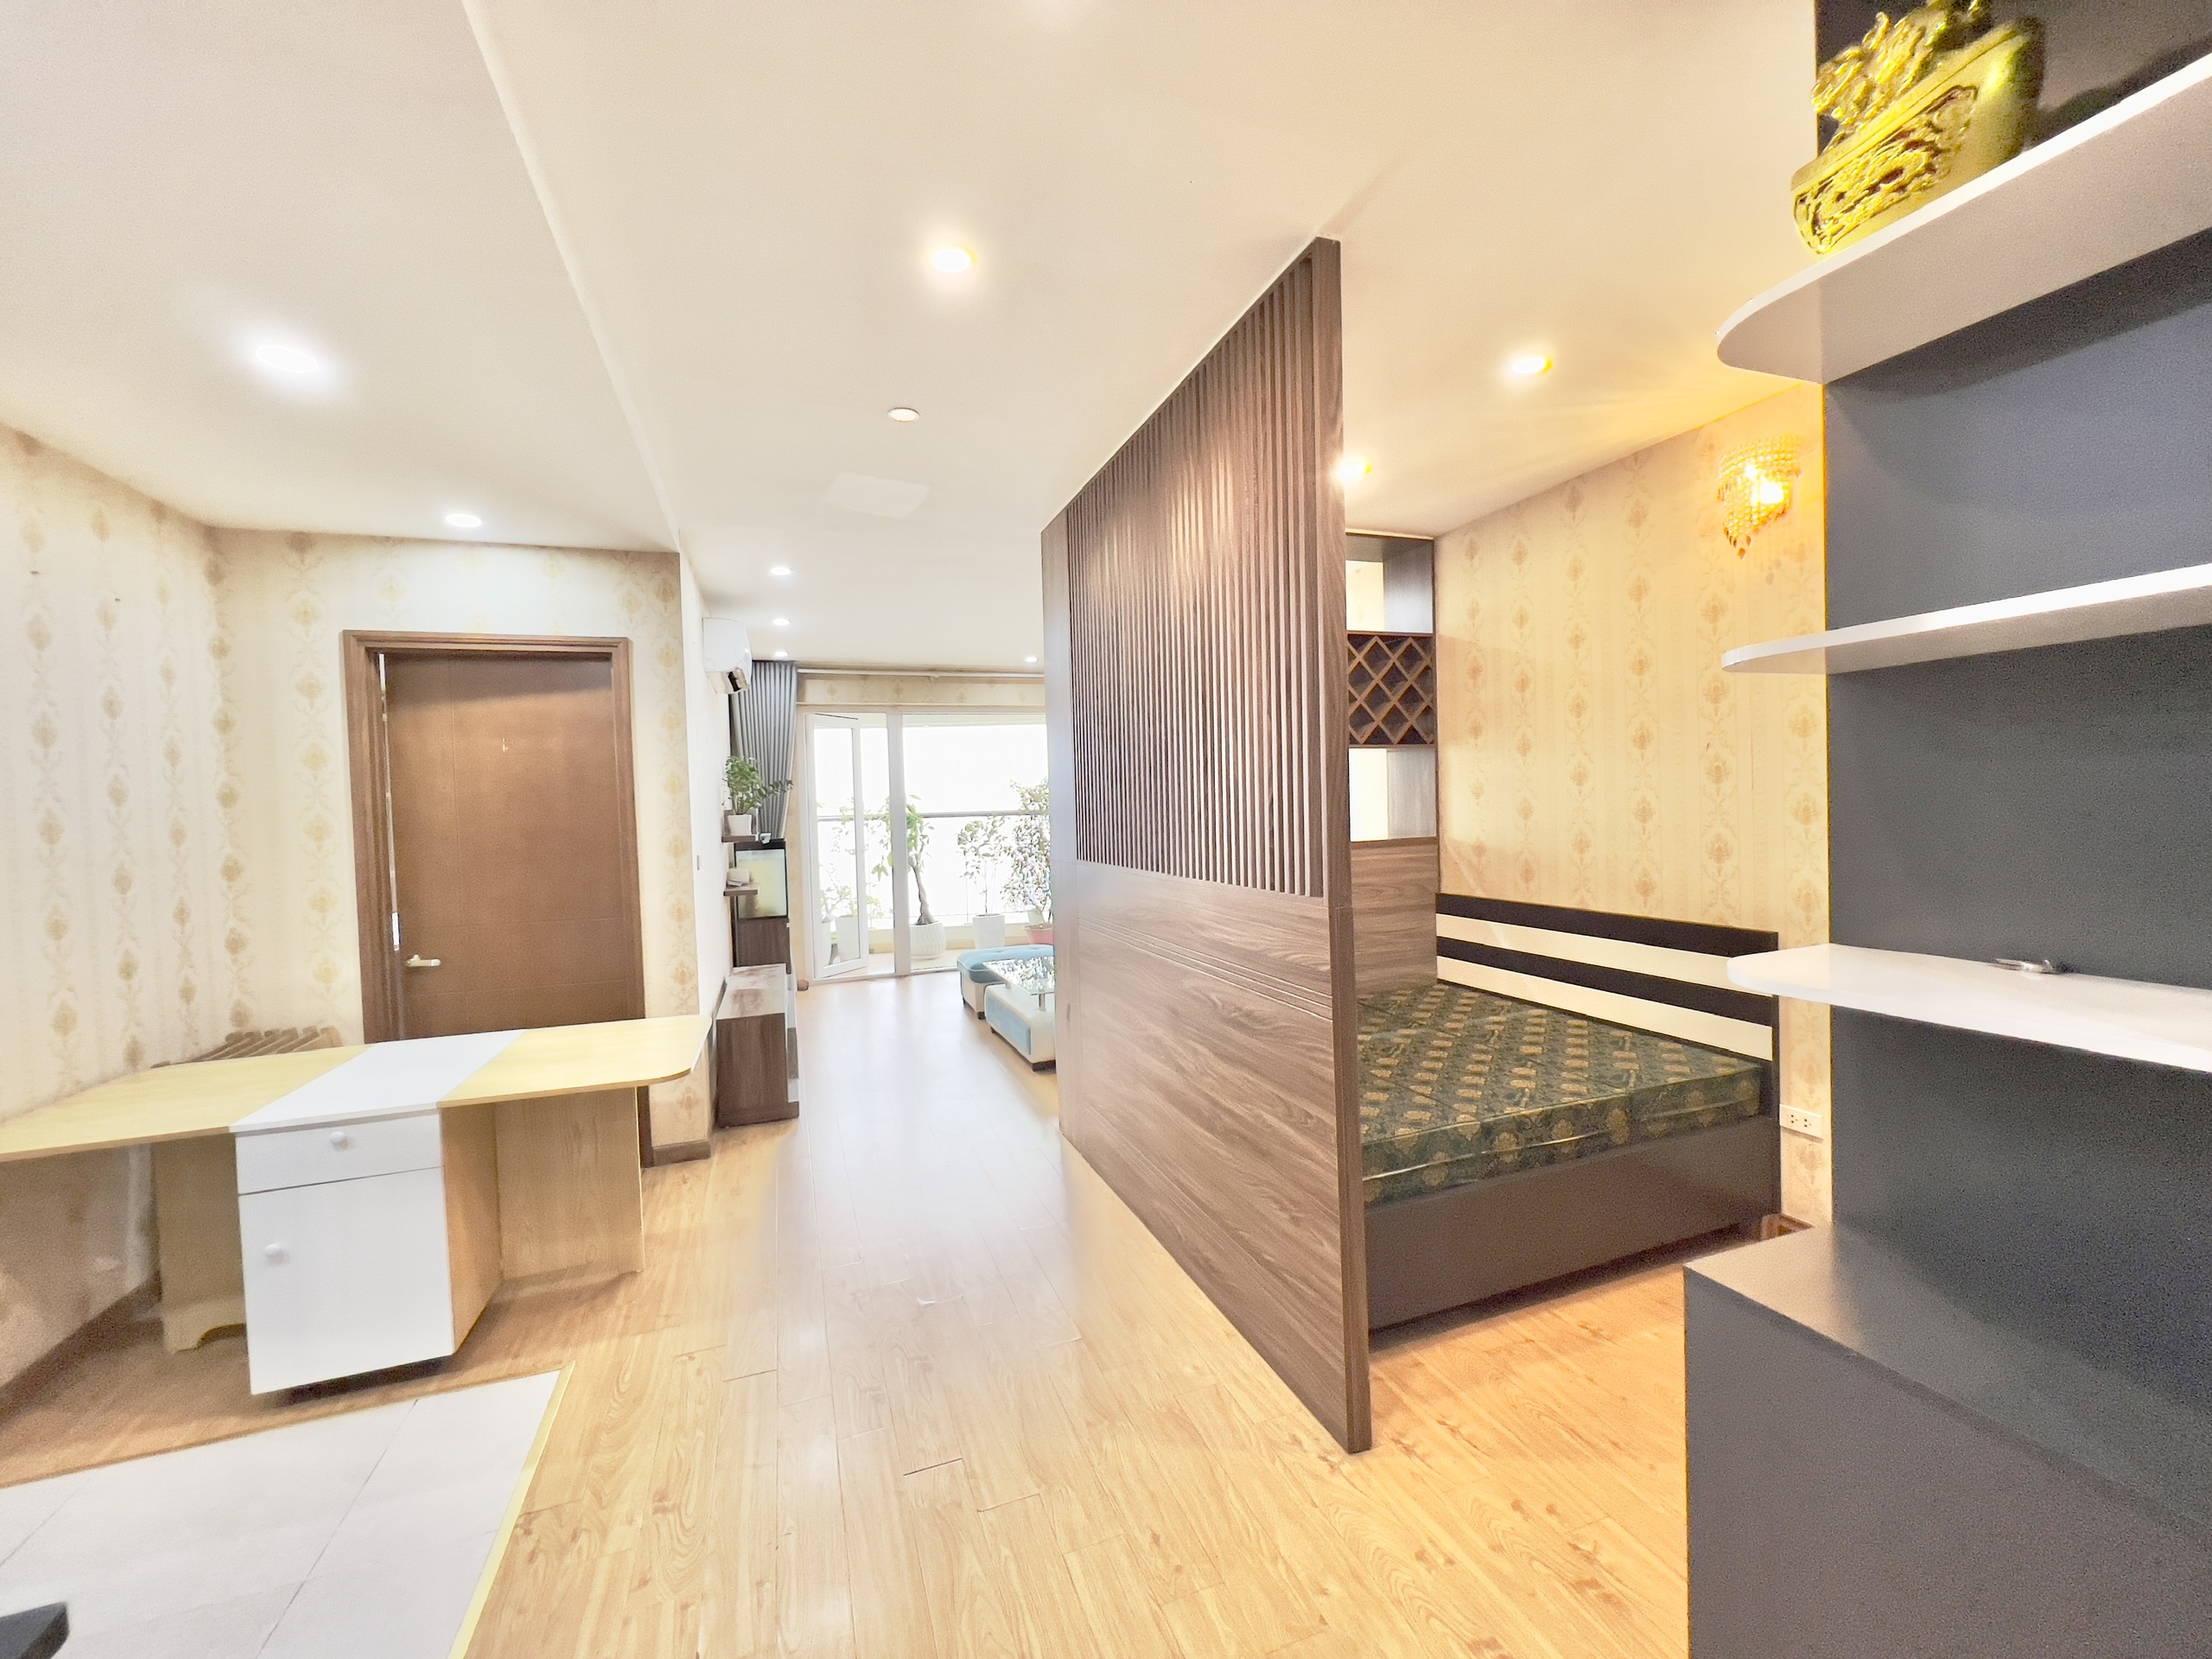 Bán chung cư Văn Phú Victoria 97m2 chia 3 phòng ngủ, thiết kế rất hợp lý và tối ưu công năng